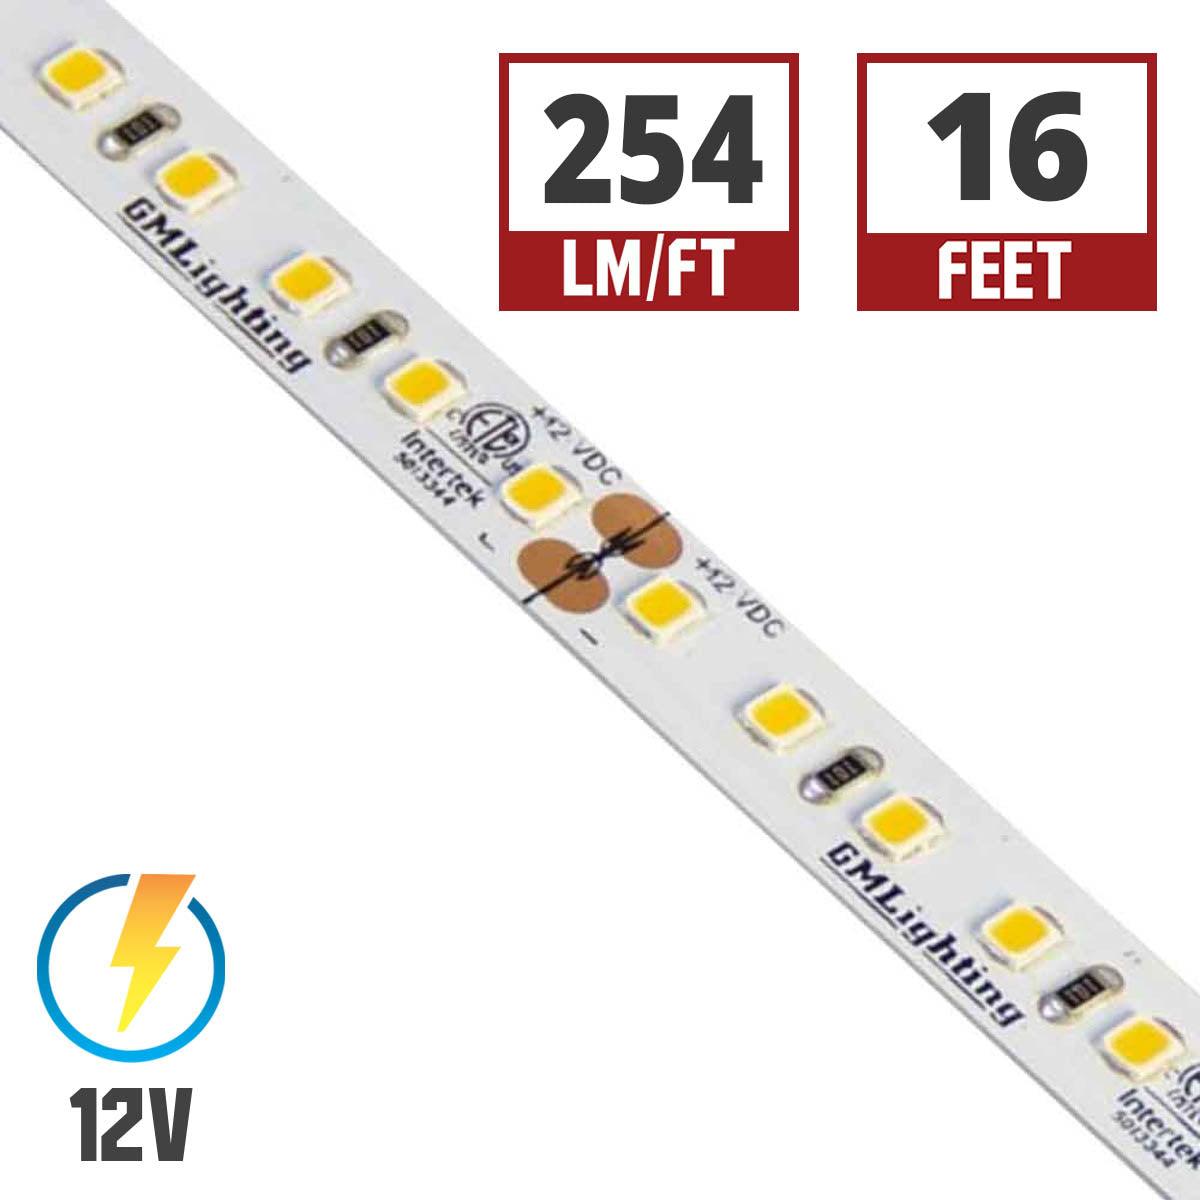 LTR-P Pro LED Strip Light, 3.0W / ft, 240 Lumens per Ft, 12V - Bees Lighting